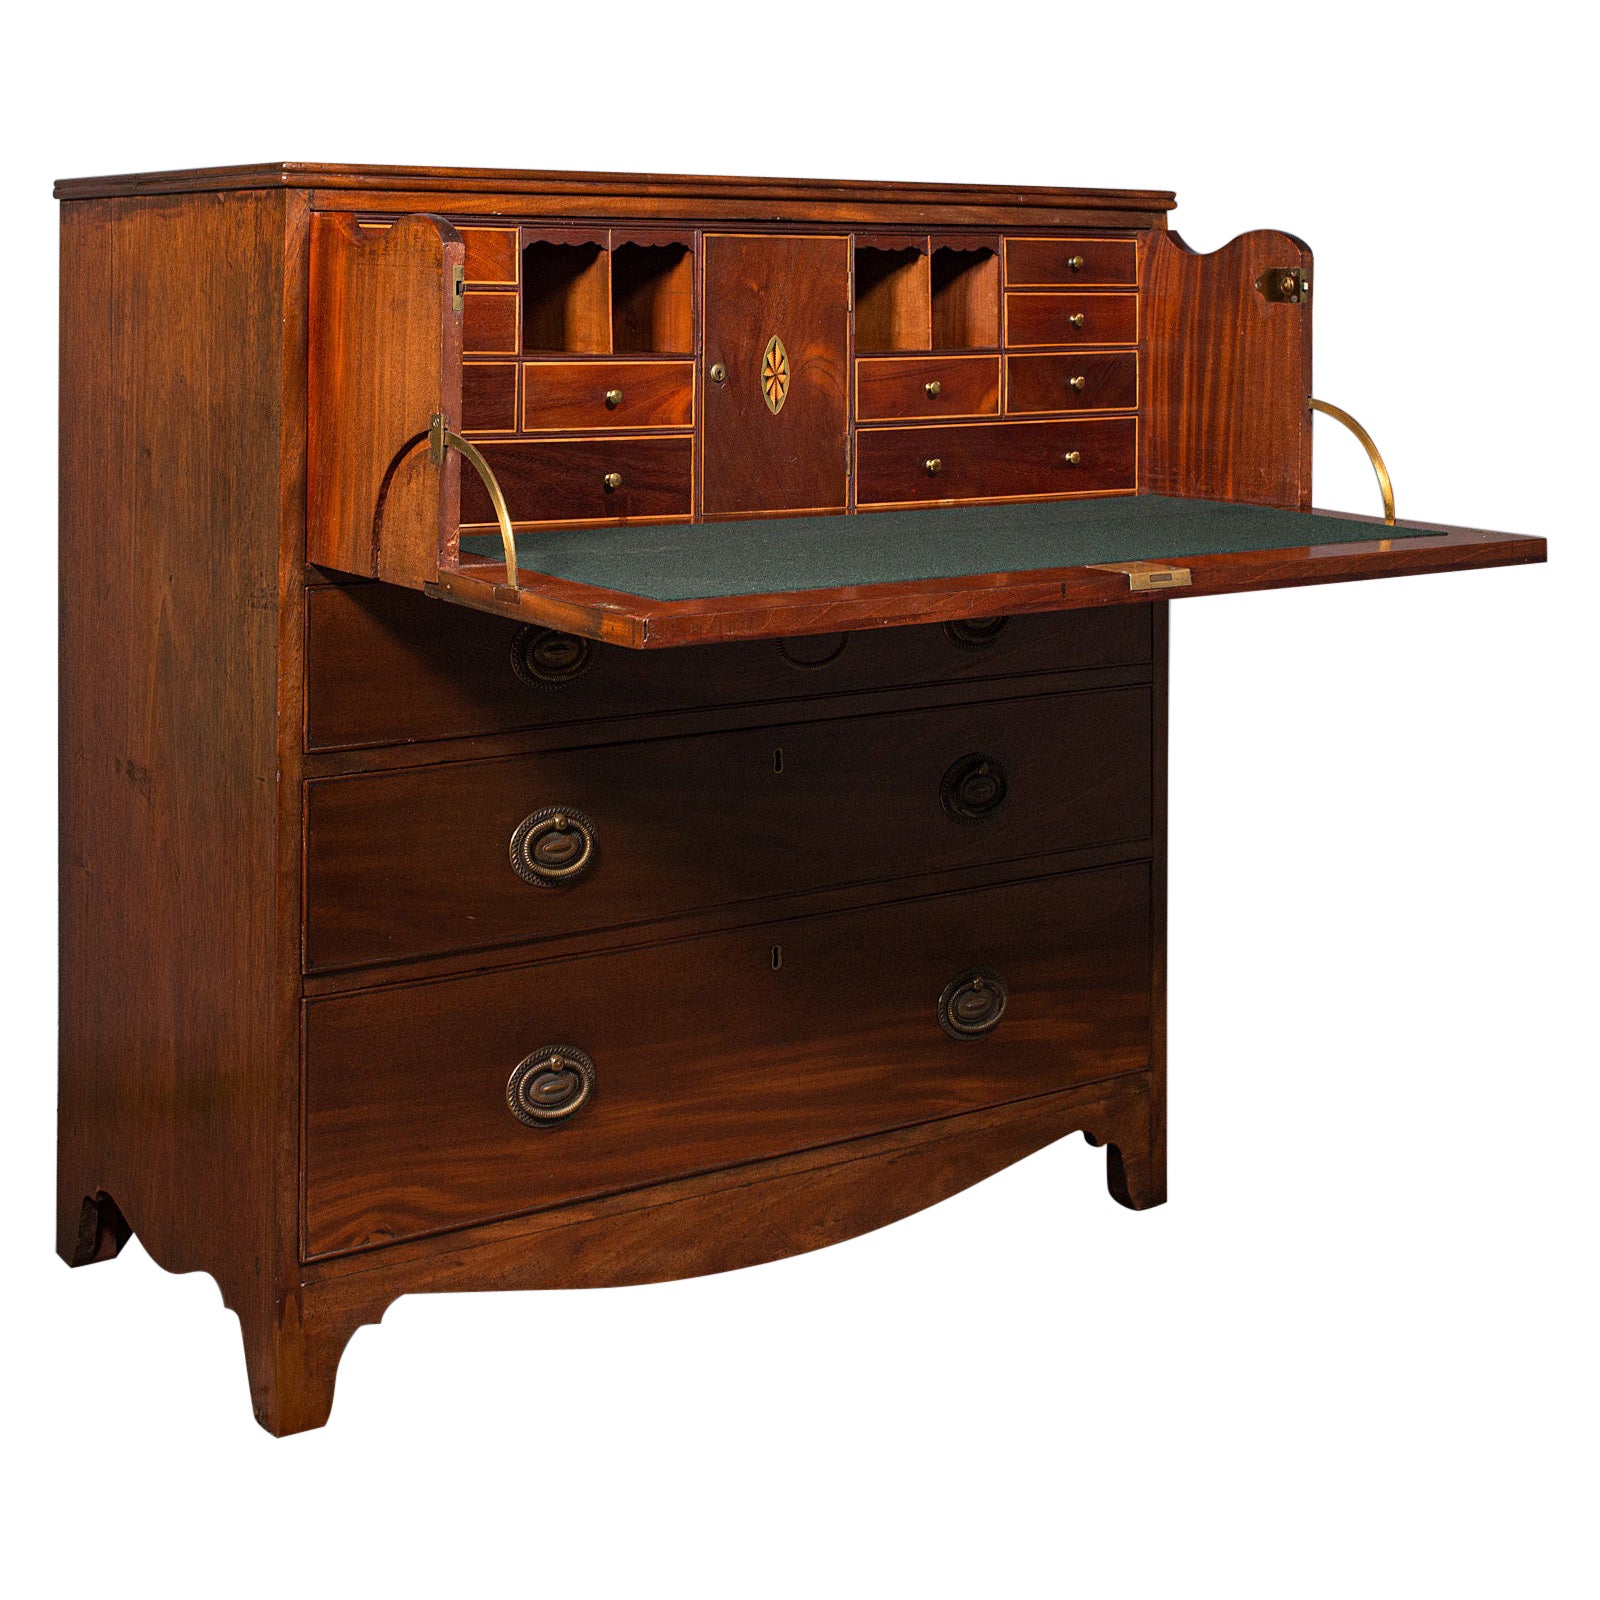 Antique Secretaire Cabinet, English, Chest of Drawers, Bureau, Desk, Georgian For Sale